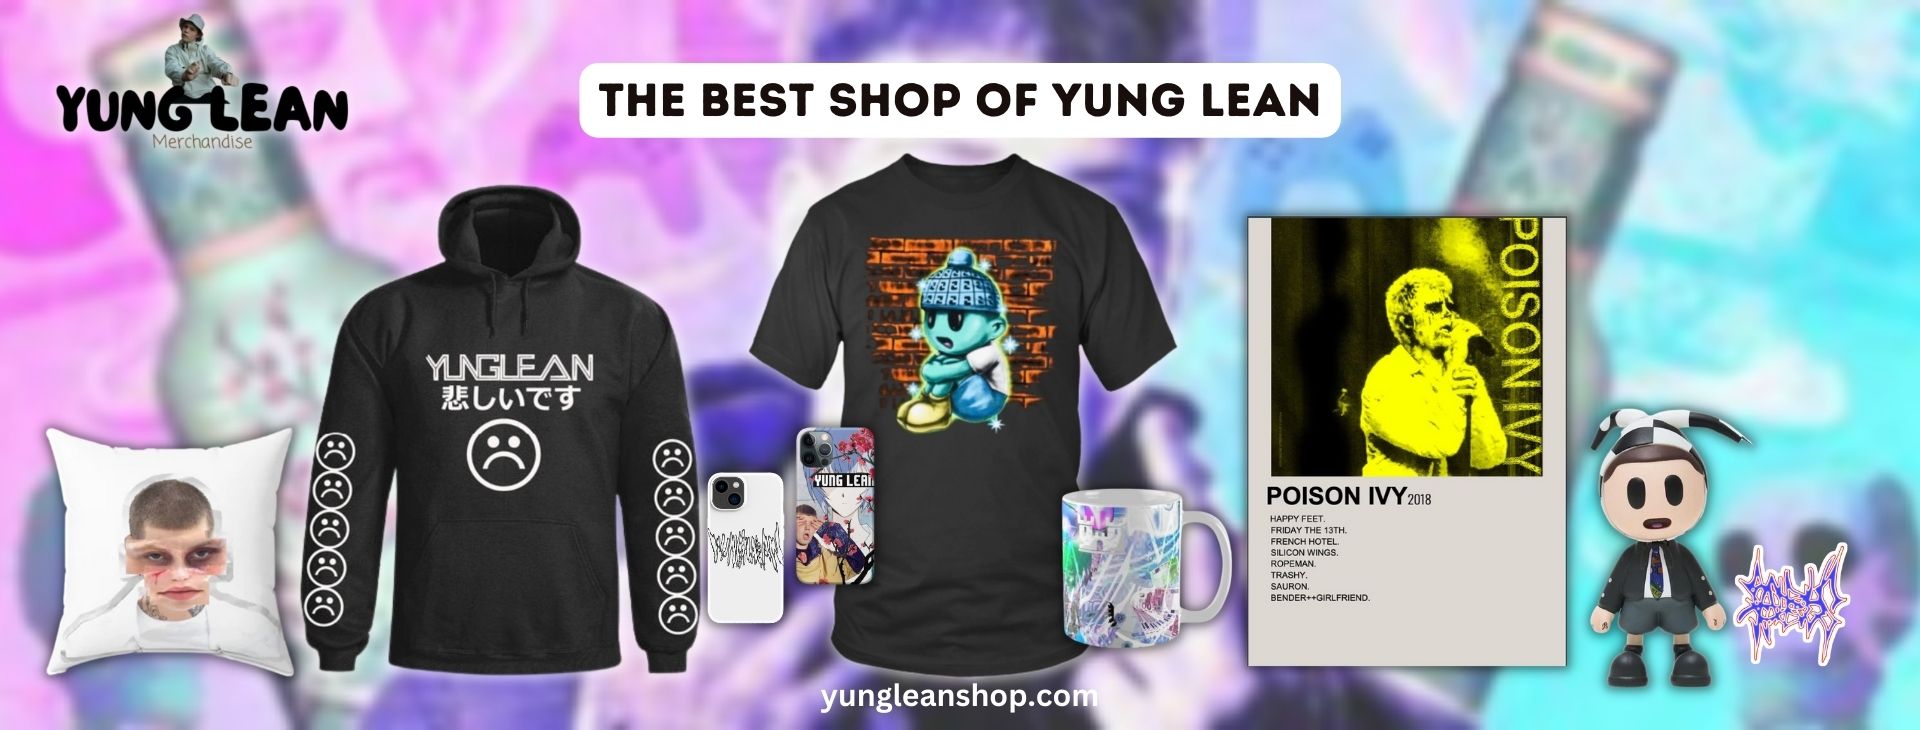 yung lean merch Banner - Yung Lean Shop